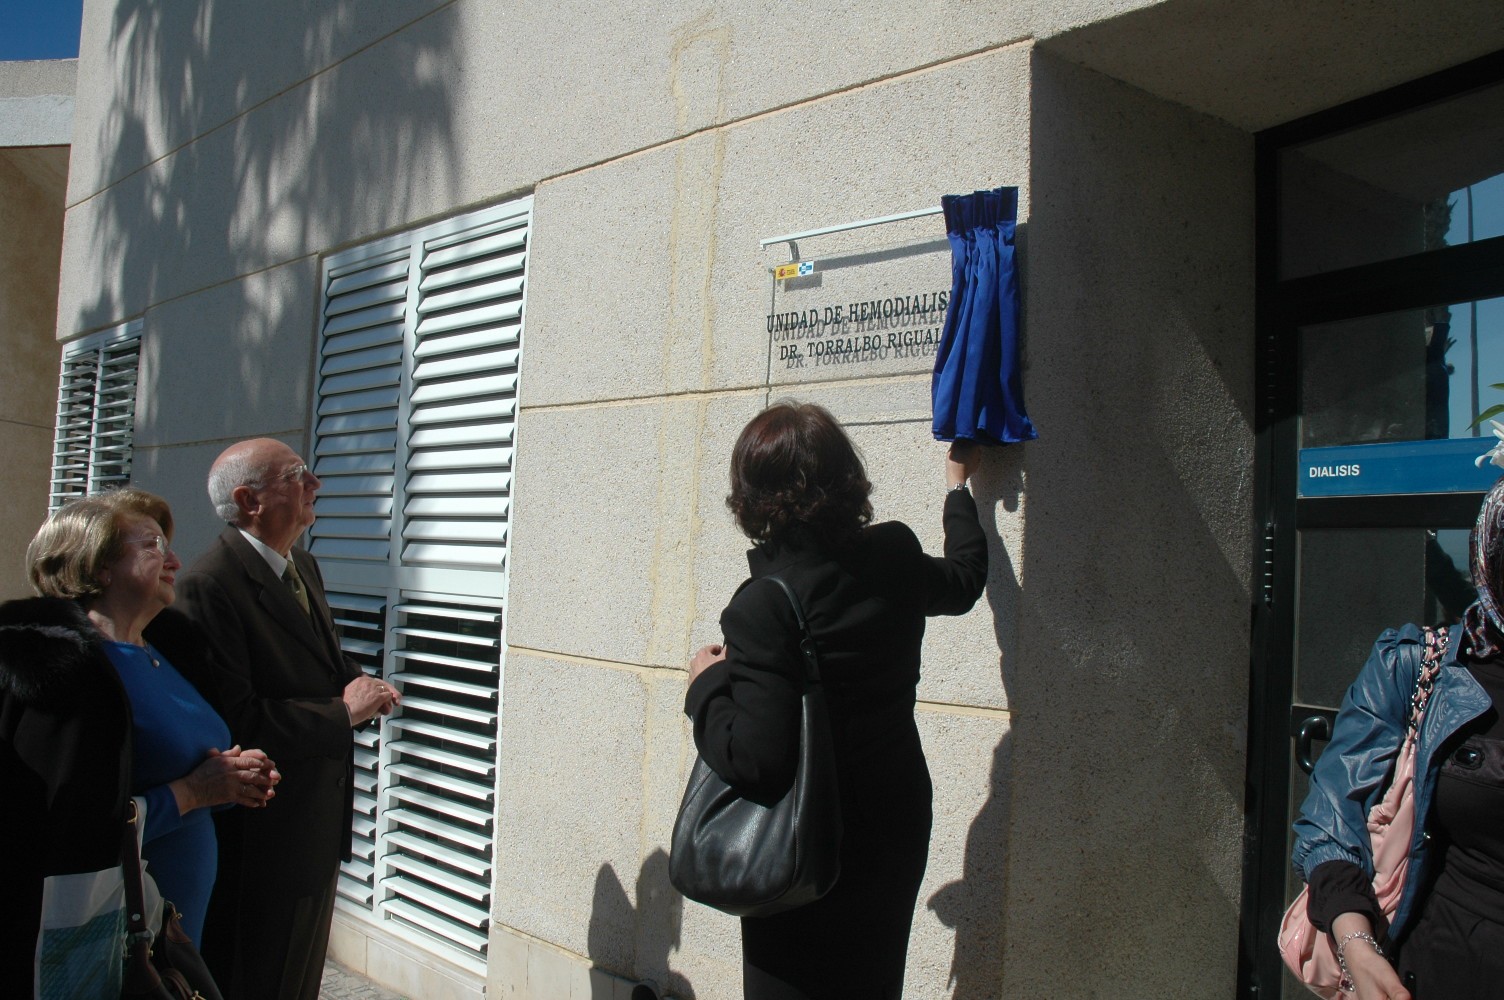 La Unidad de Hemodiálisis del hospital Comarcal recibe el nombre de doctor Antonio Torralbo.